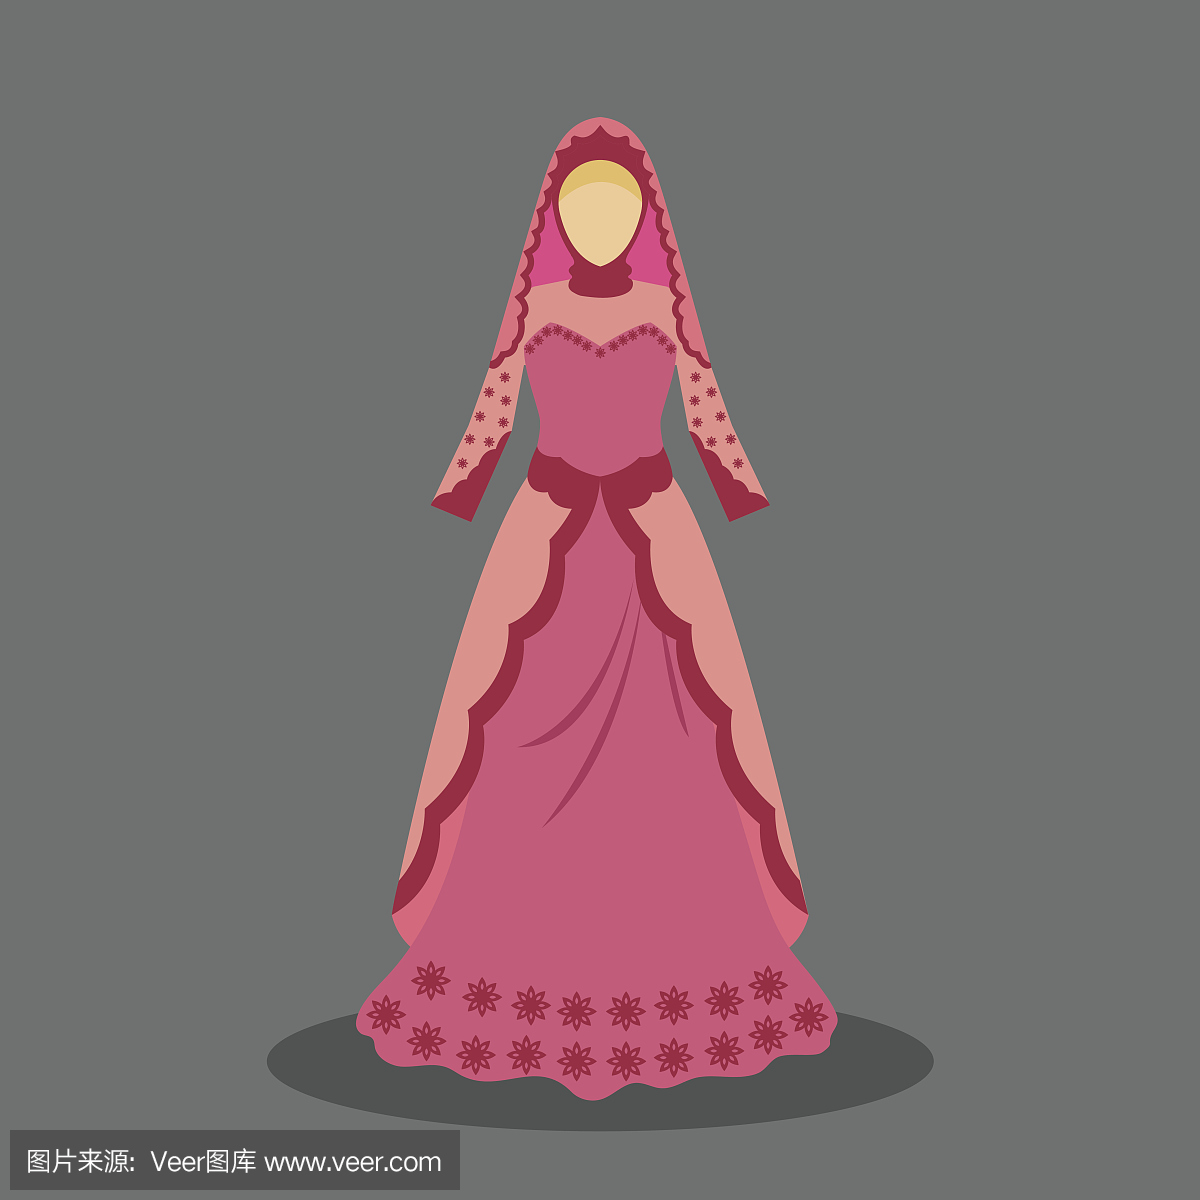 伊斯兰婚纱礼服为现代风格的穆斯林新娘。矢量